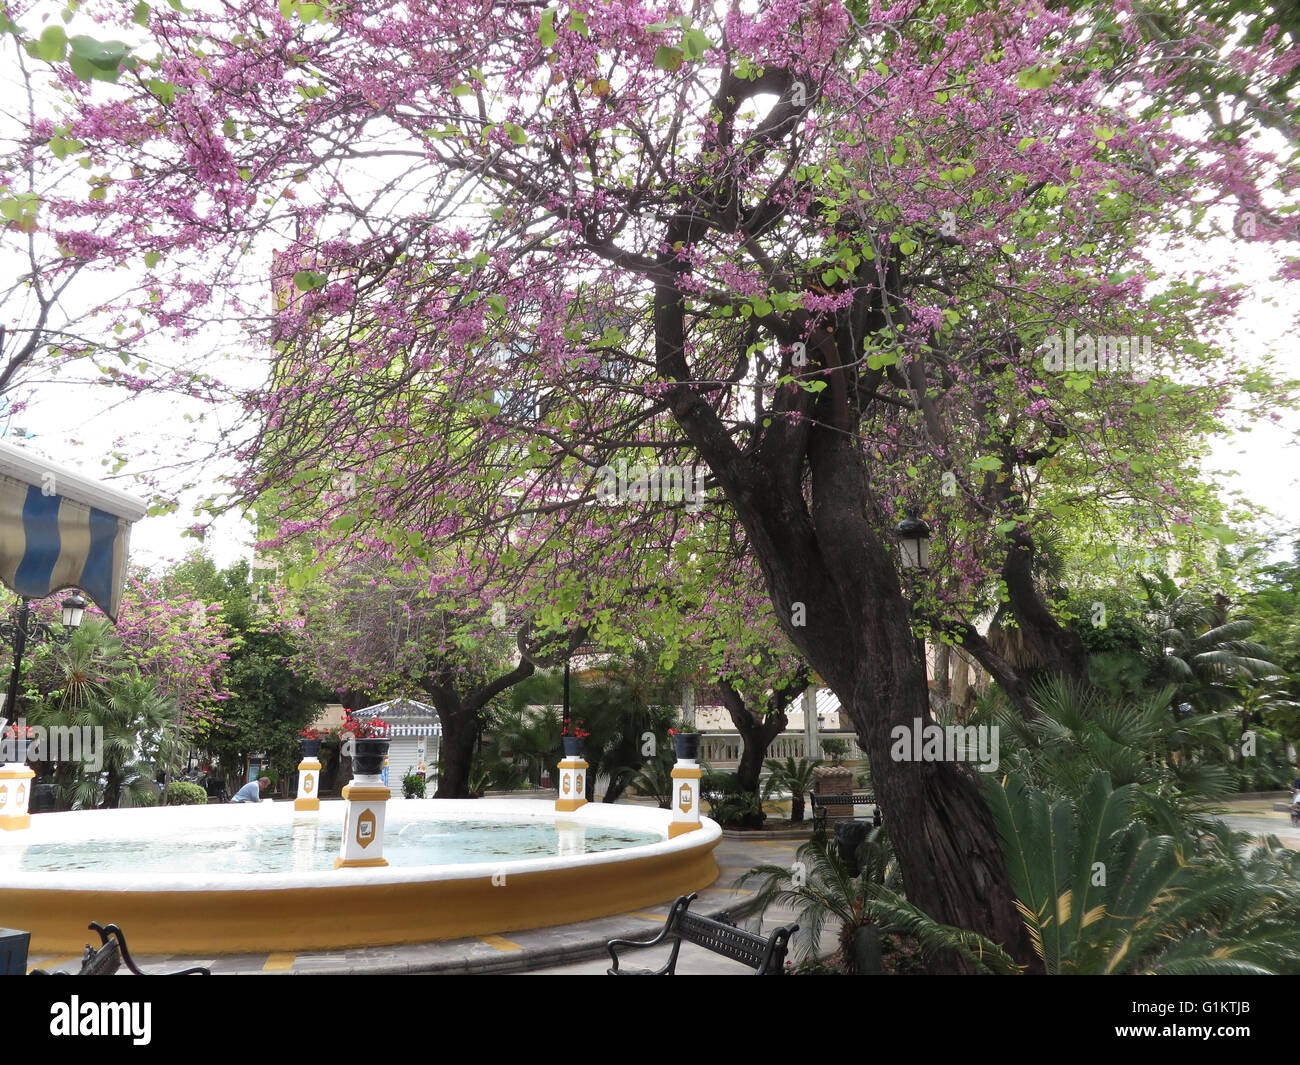 La primavera en el Parque de la alameda de Marbella, Andalucia España Foto de stock